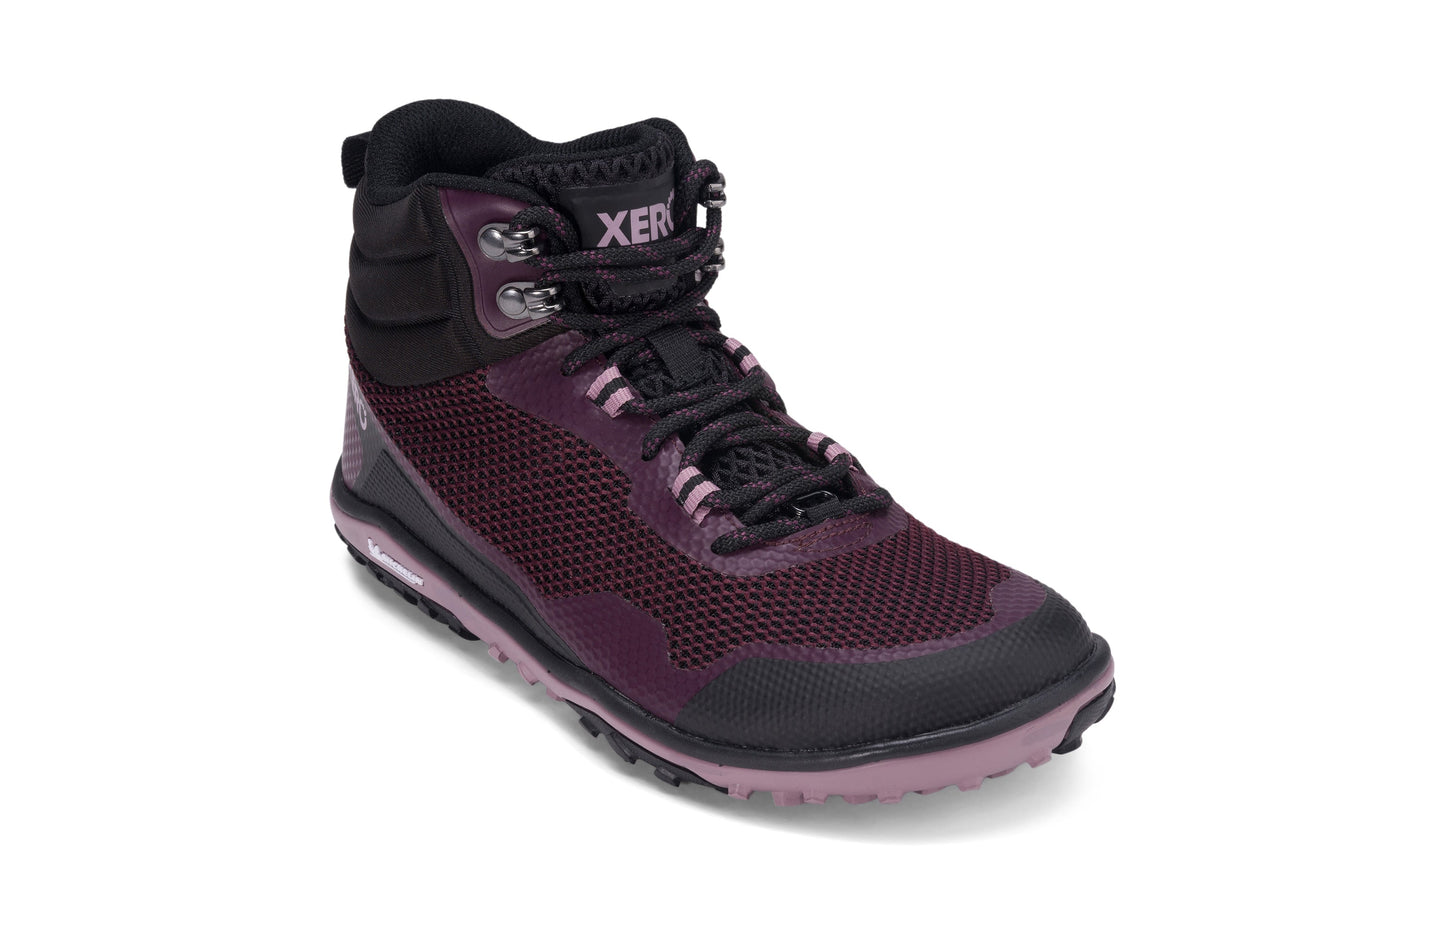 Xero Shoes Scrambler Mid Womens barfods lette vandrestøvler til kvinder i farven black / fig, vinklet